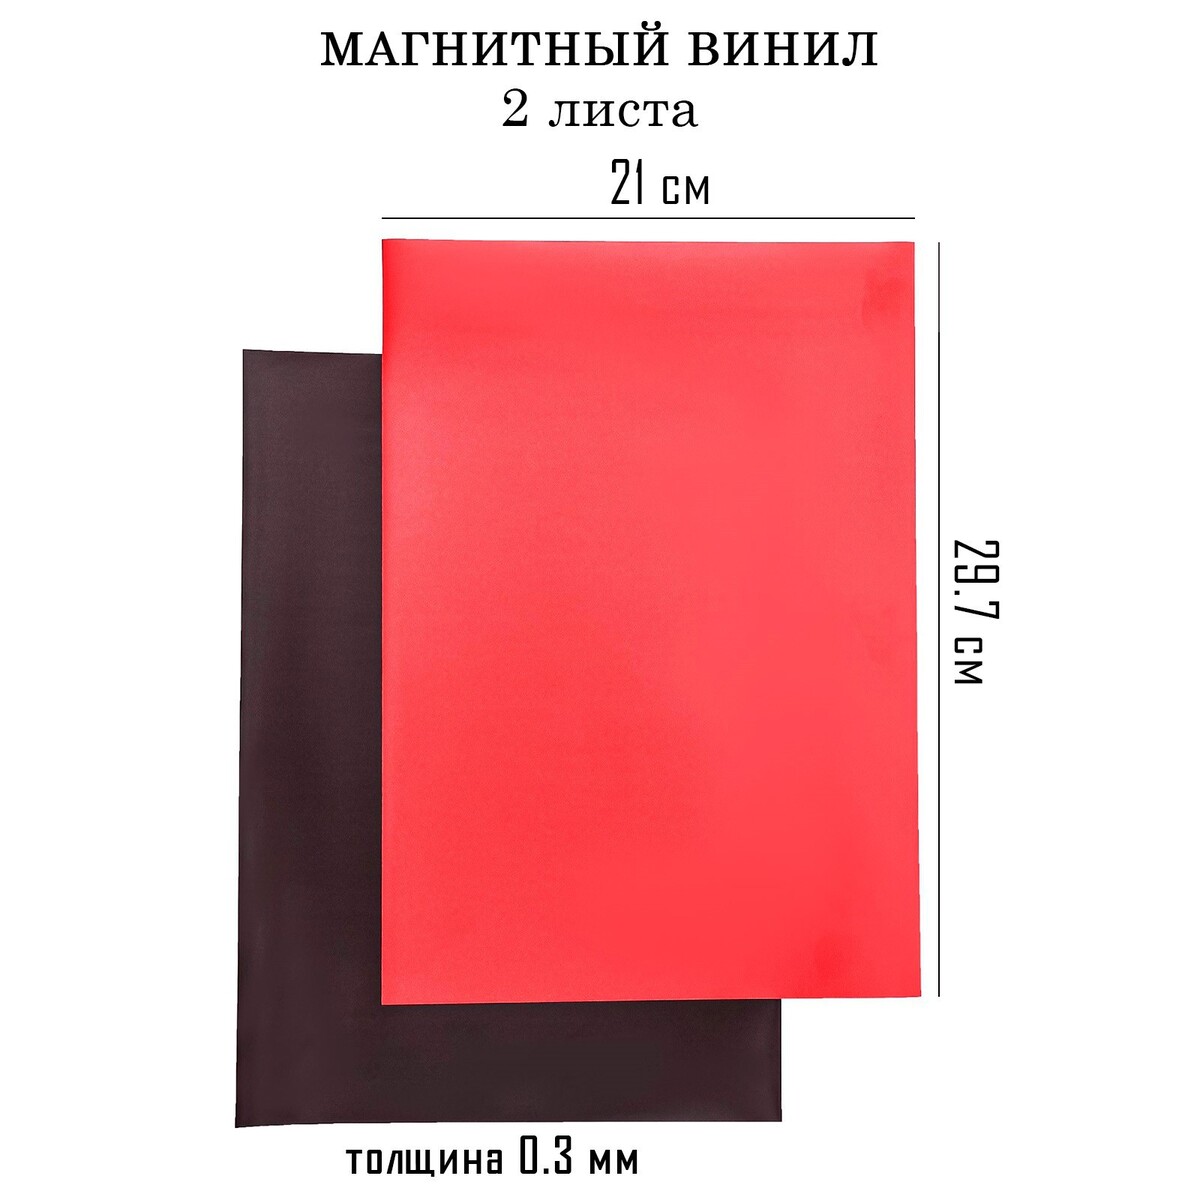 Магнитный винил, с пвх поверхностью, а4, 2 шт, толщина 0.3 мм, 21 х 29.7 см, красный к реке путешествие под поверхностью